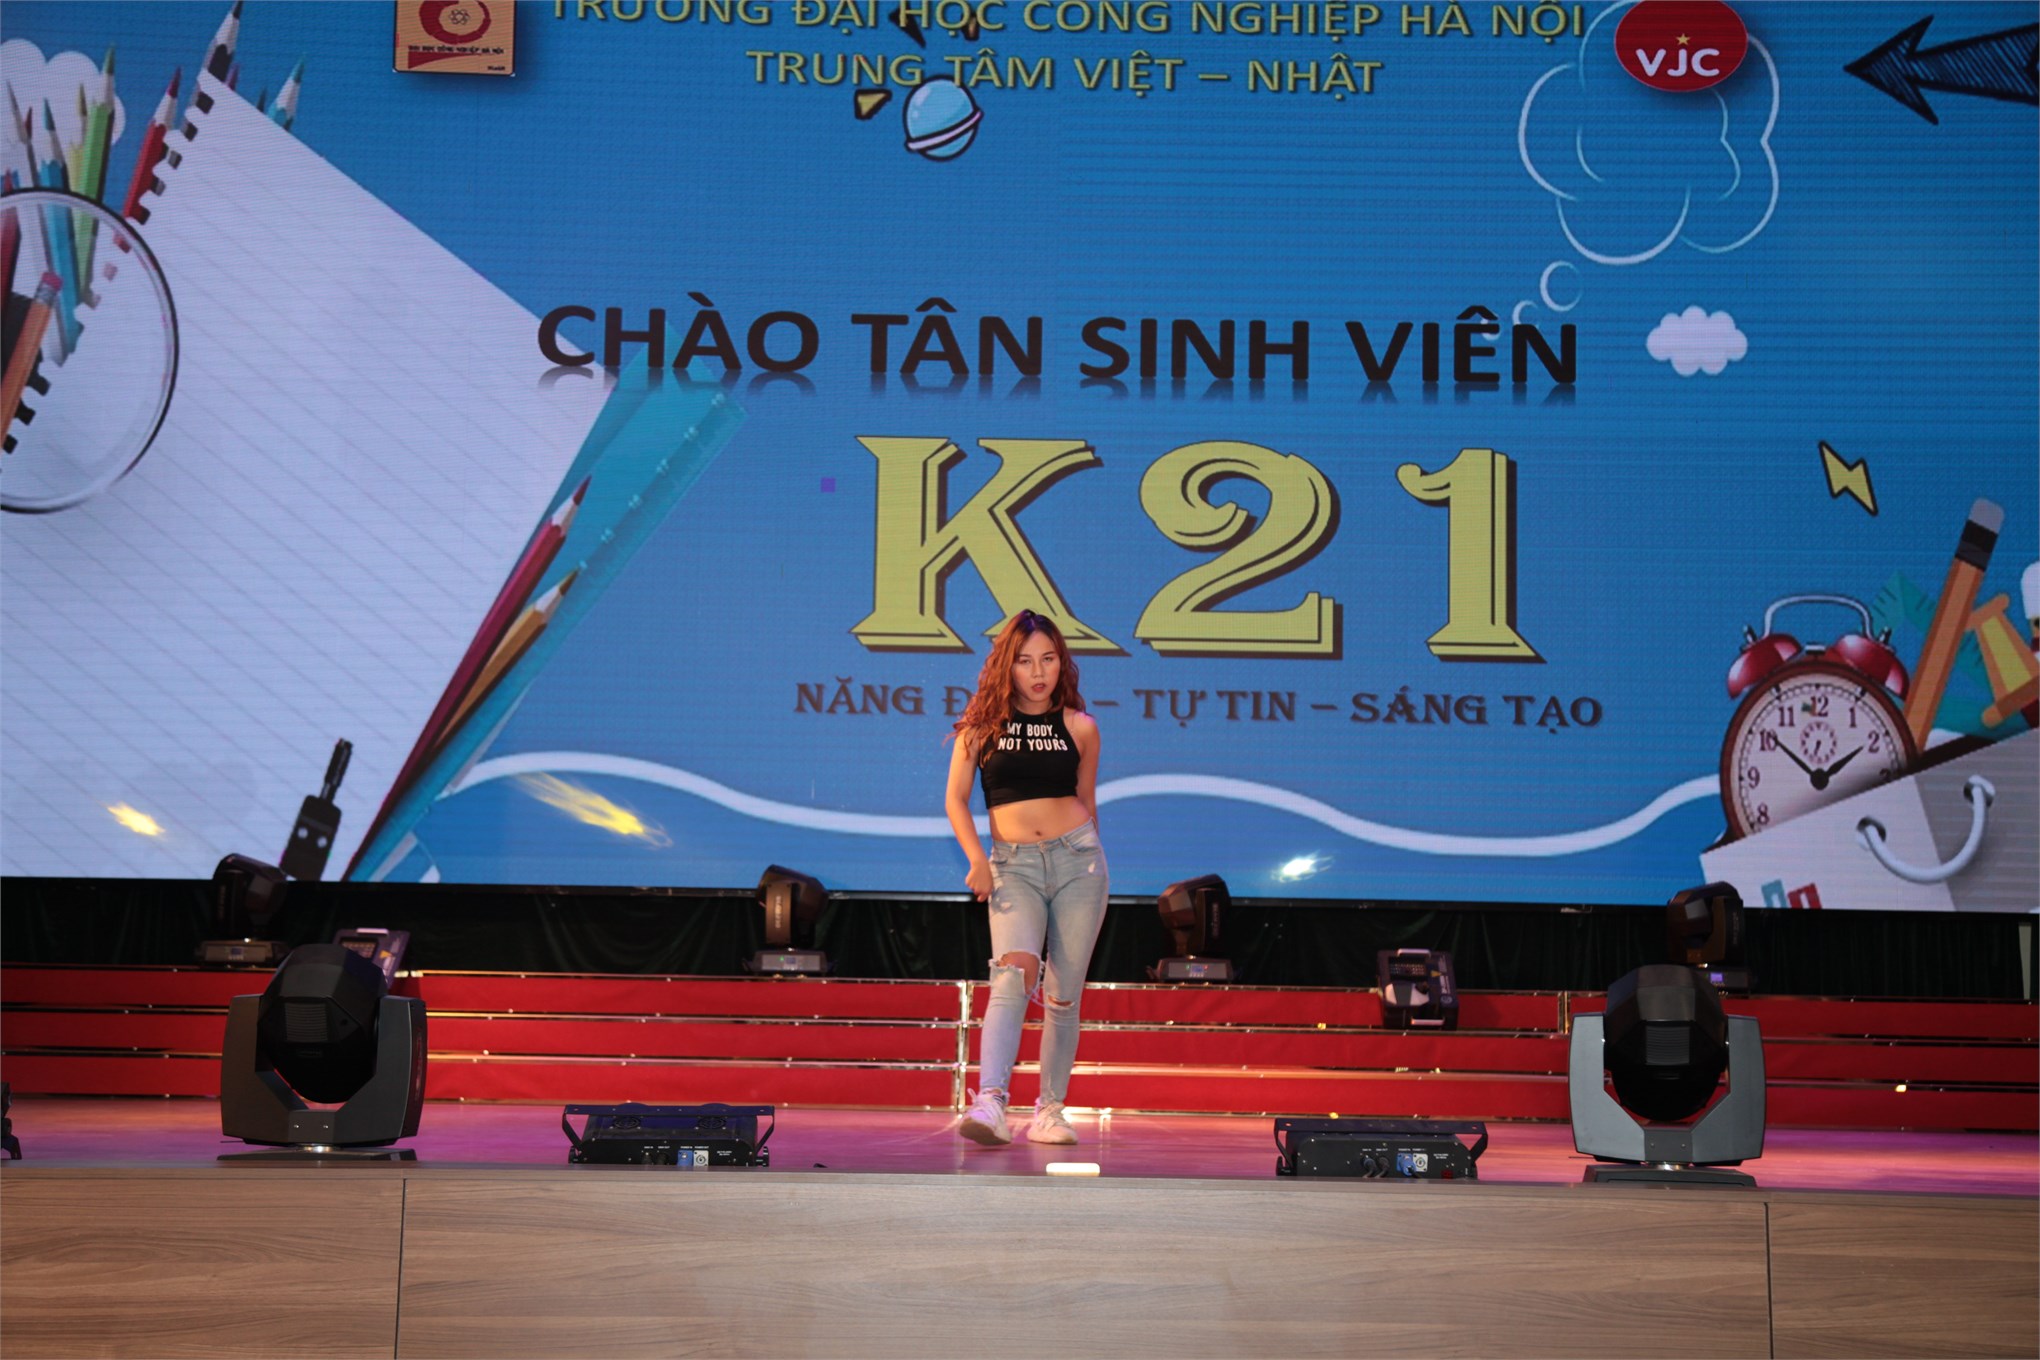 Sôi động ngày hội “Chào tân sinh viên 2019” – Trung tâm Việt Nhật